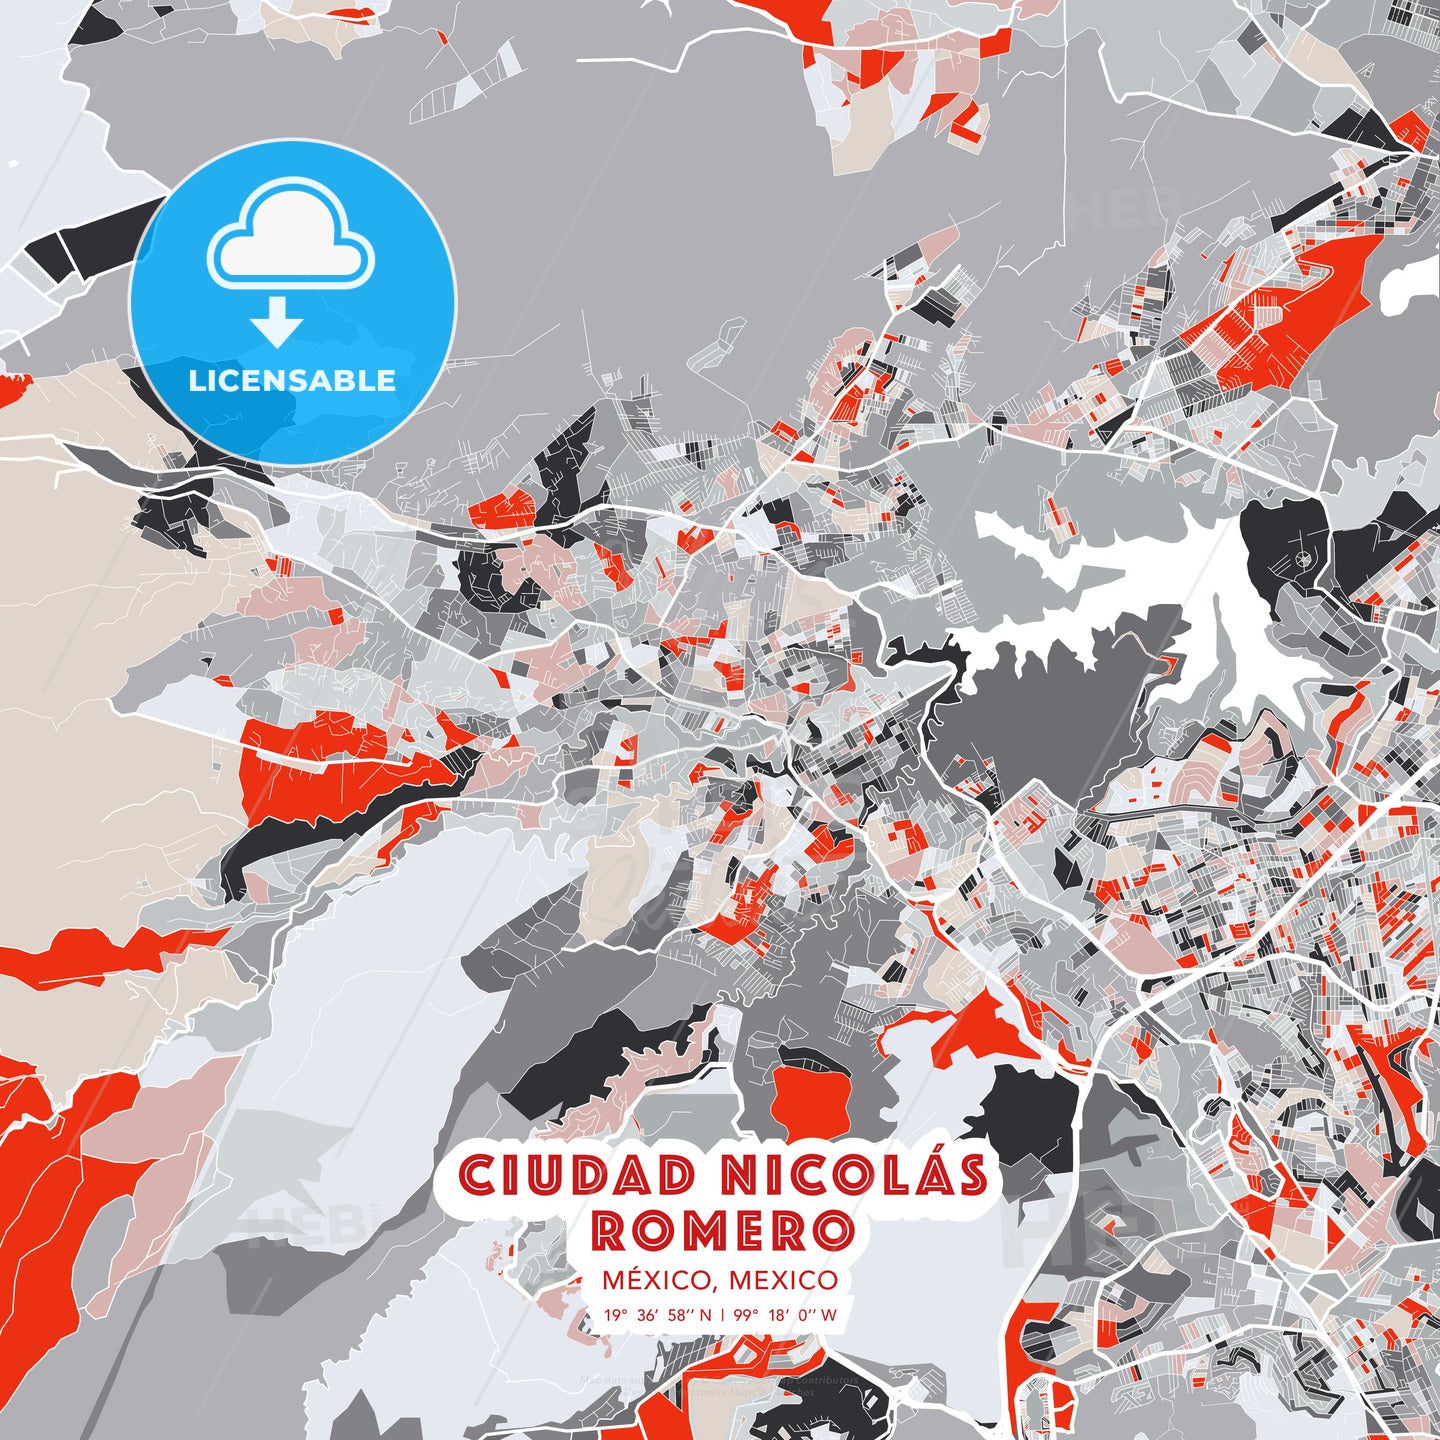 Ciudad Nicolás Romero, México, Mexico, modern map - HEBSTREITS Sketches